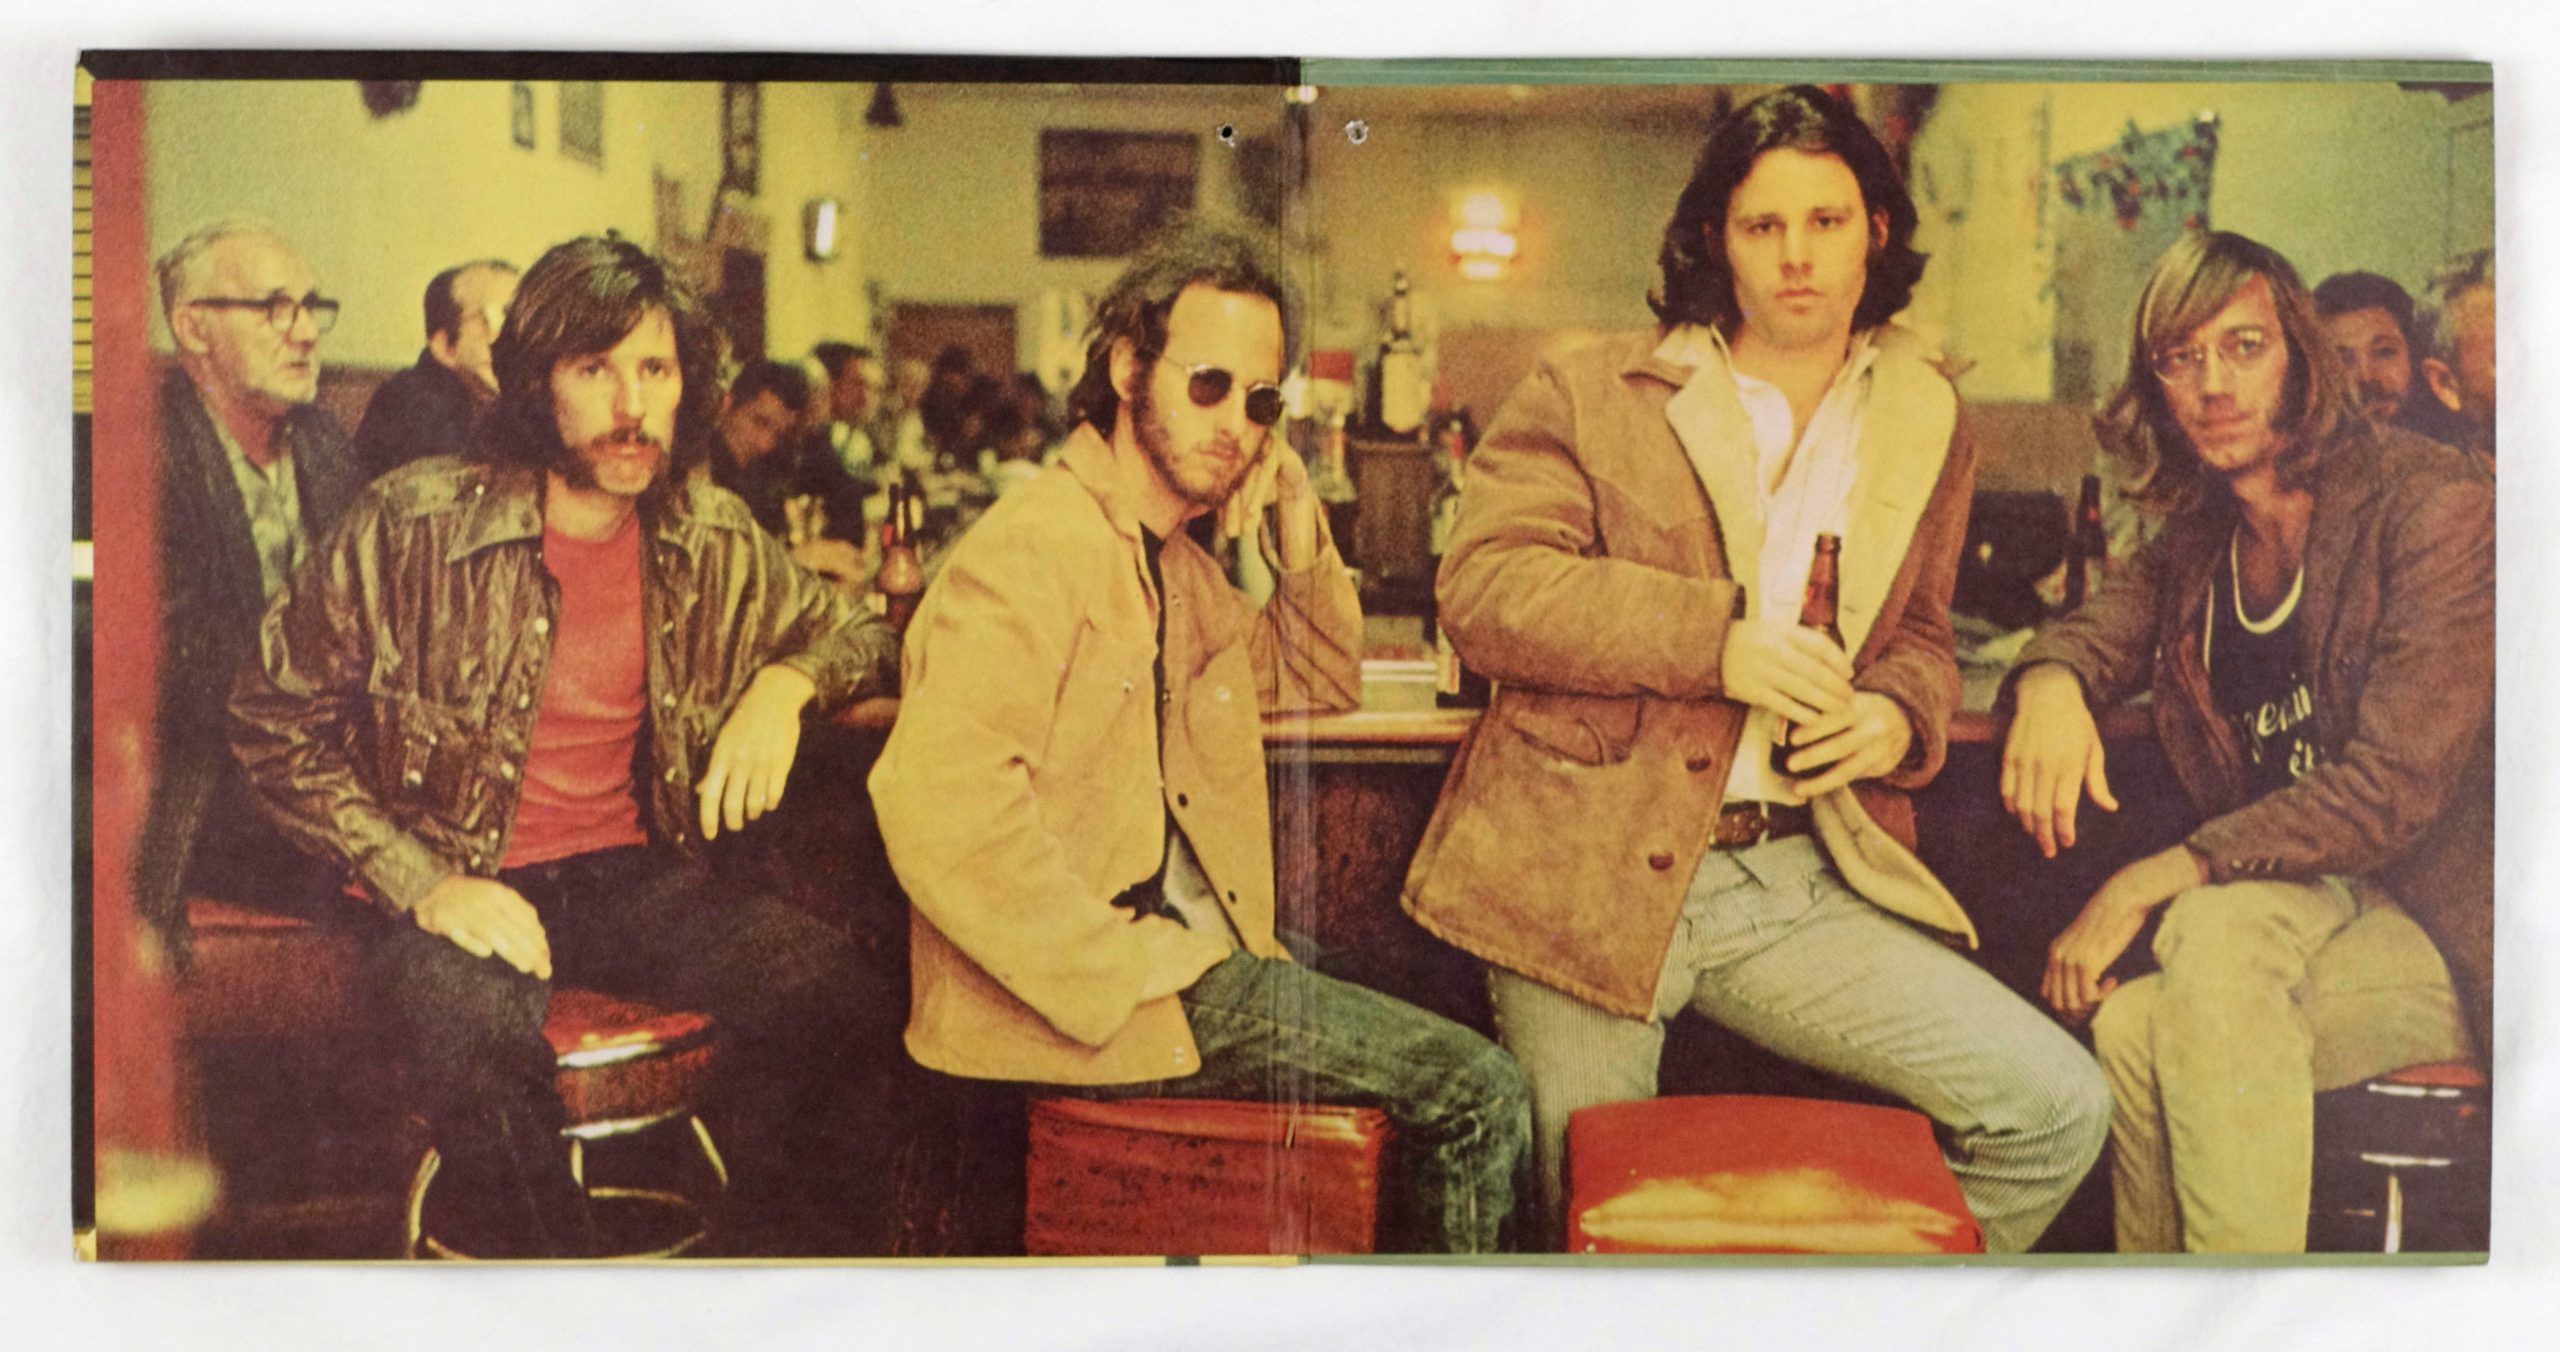 The Doors ‎Vinyl Morrison Hotel 1970